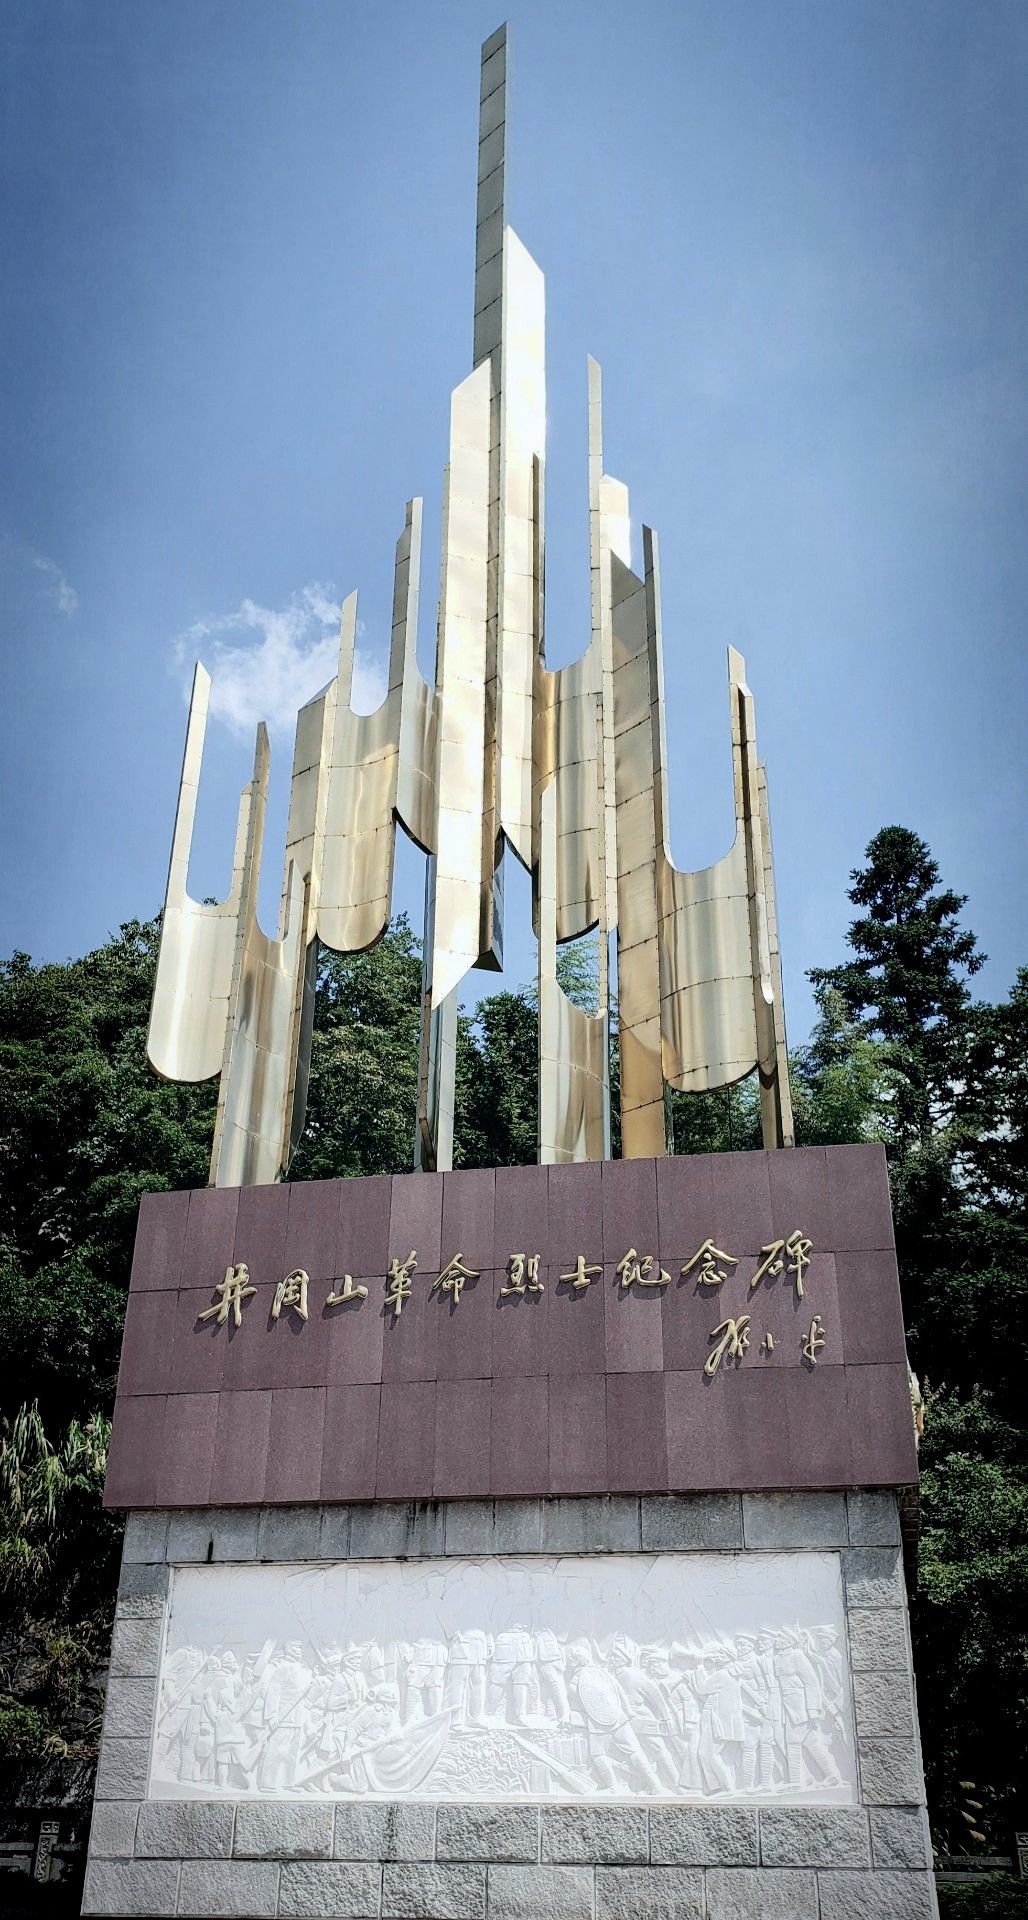 【携程攻略】井冈山黄洋界保卫战纪念碑景点,从这座碑可以学到中国历史的不少知识。它是60年才建的，起初是木头的…